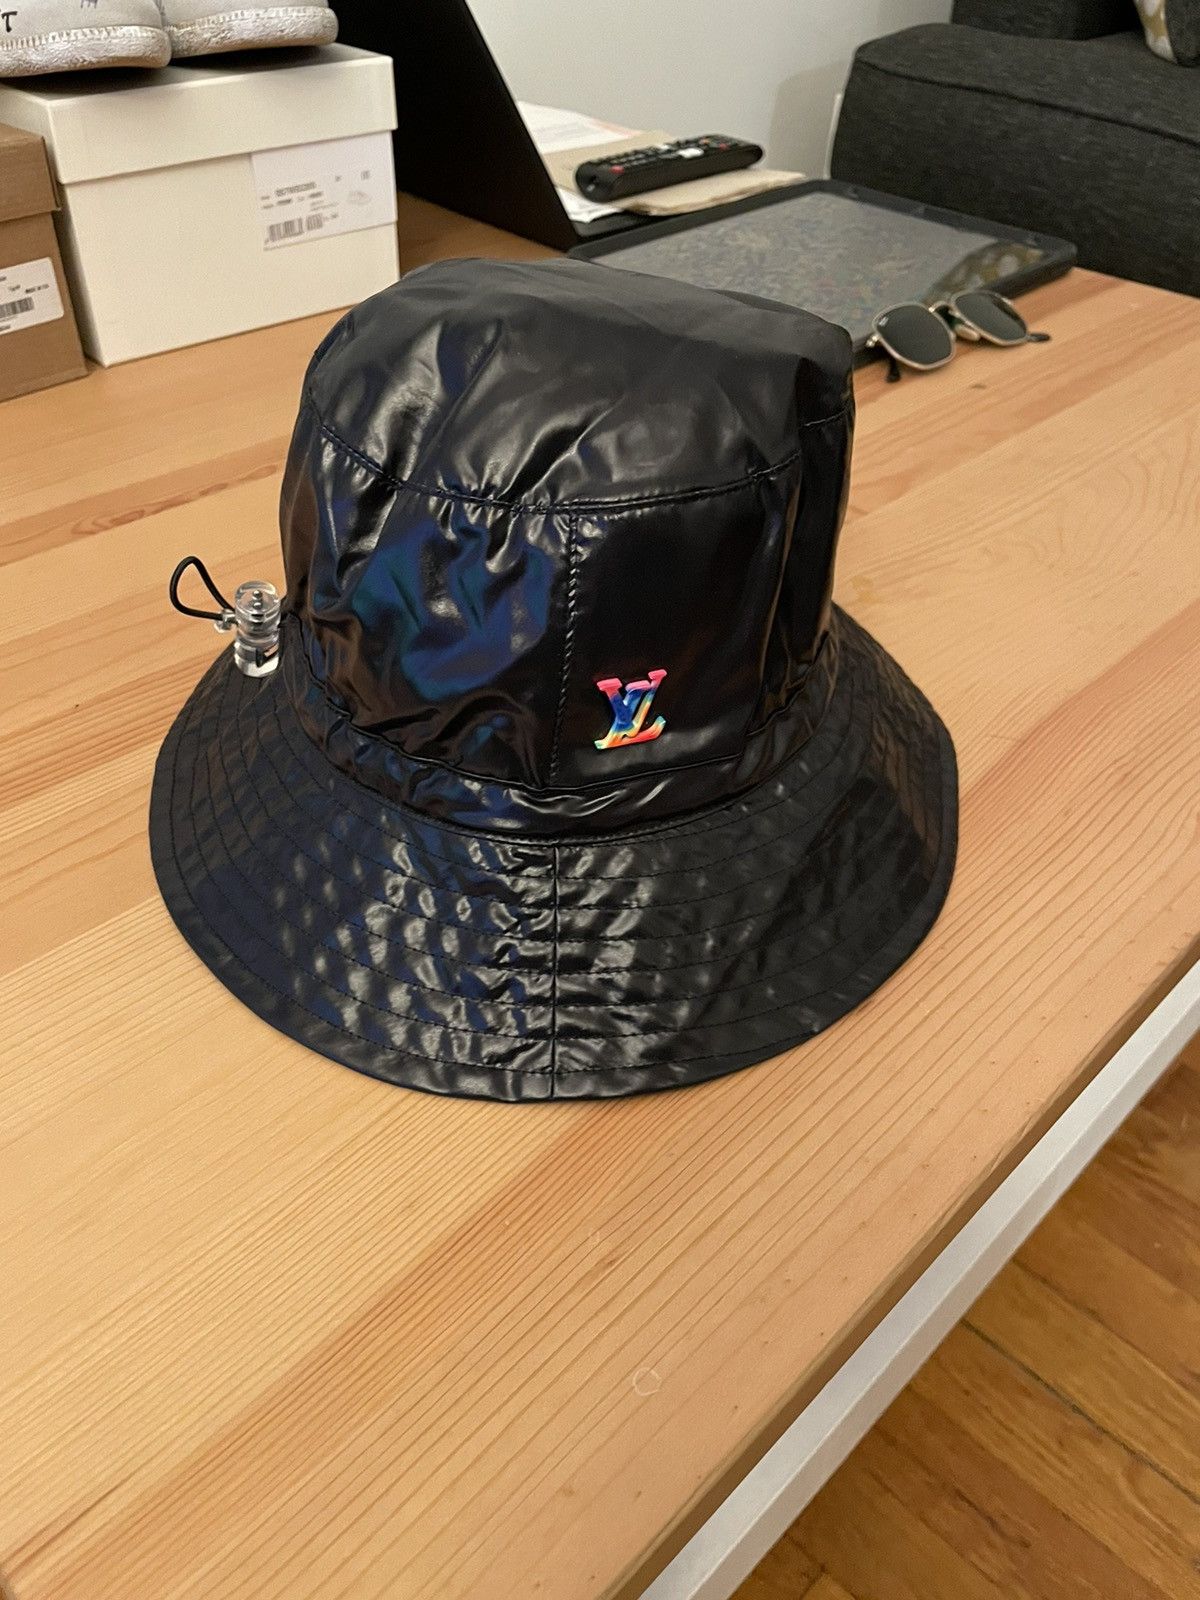 Louis Vuitton '2054' Packable Bucket Hat - Black Hats, Accessories -  LOU816318